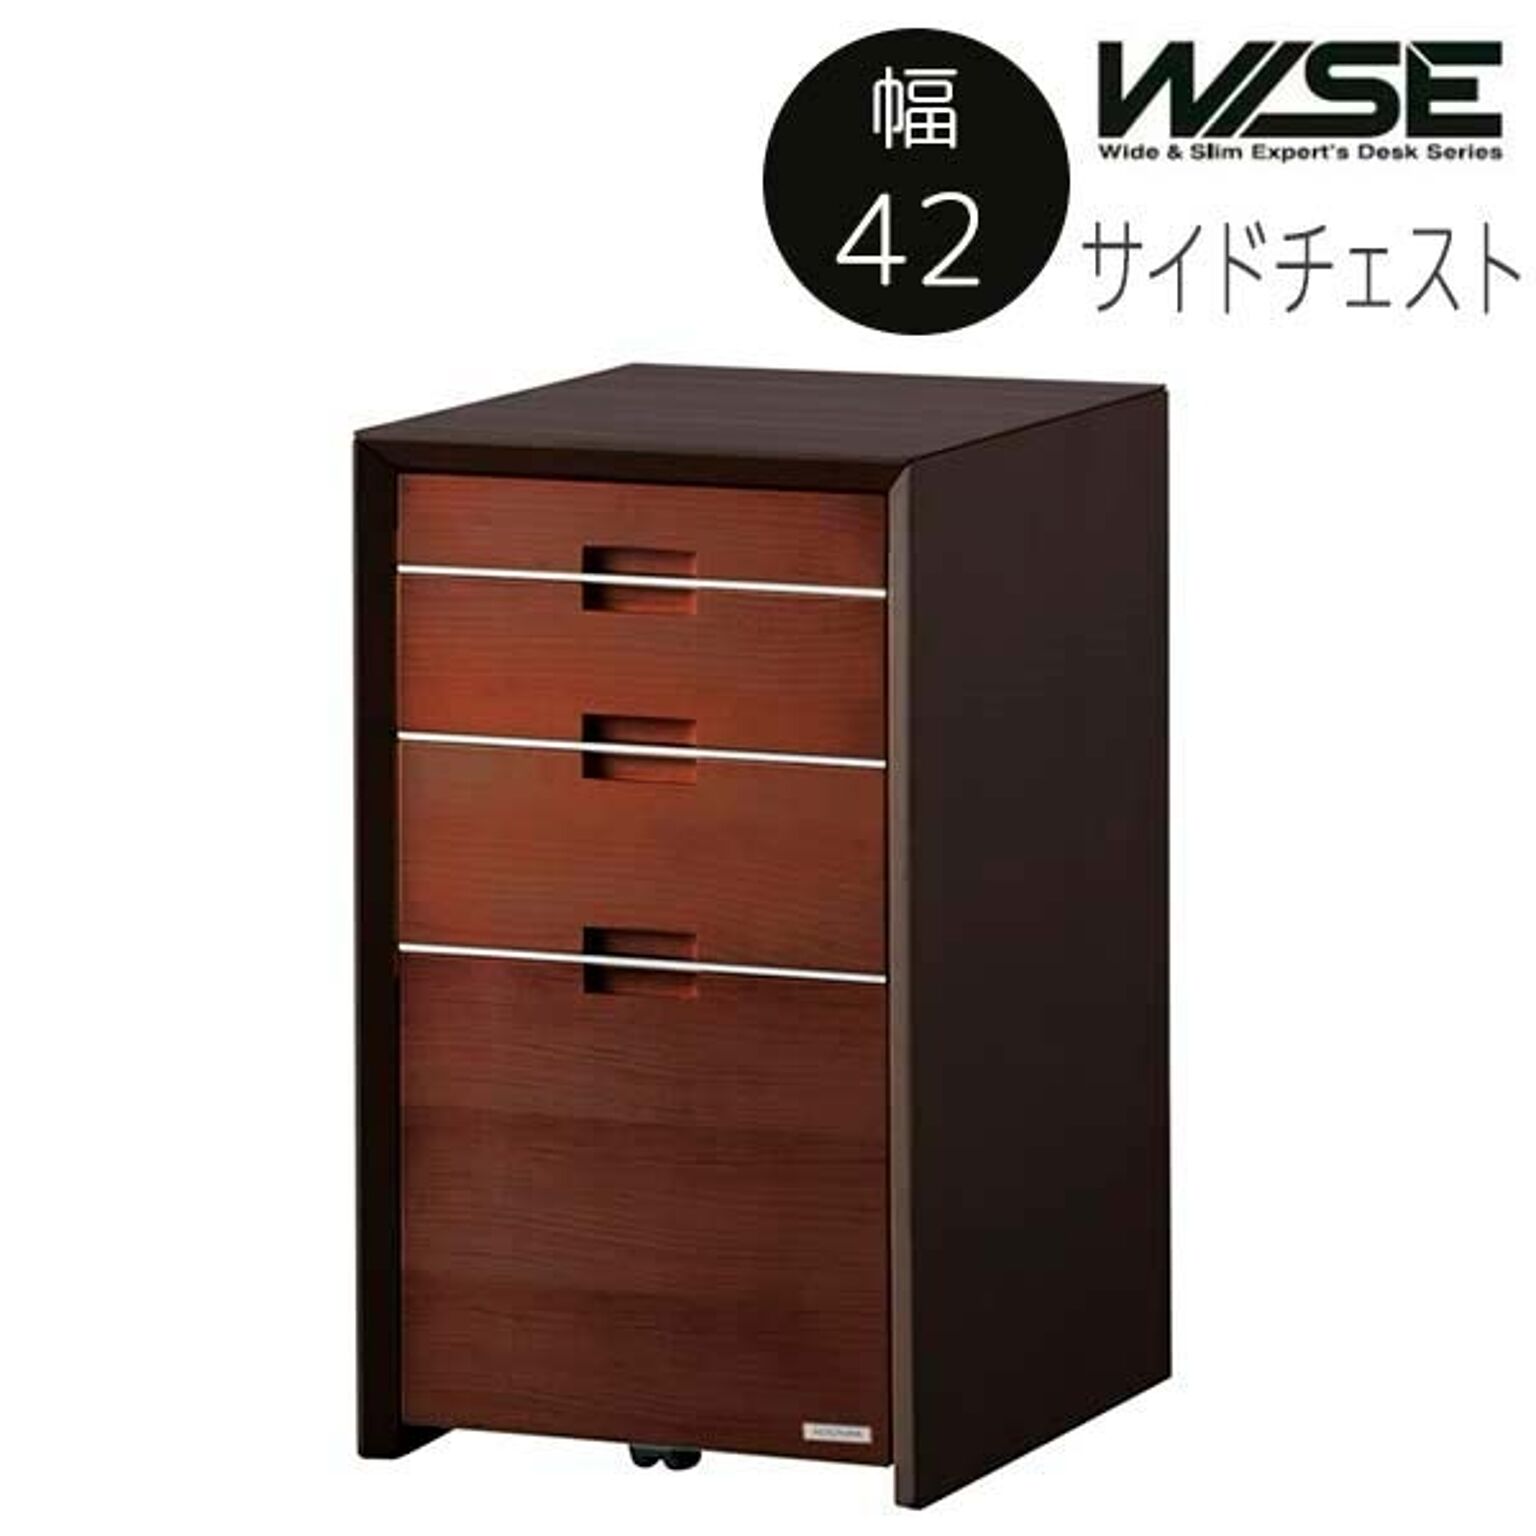 コイズミ サイドチェスト ダークブラウン色 木製 KWB-637 BW WISE 幅42 奥行55 高さ73